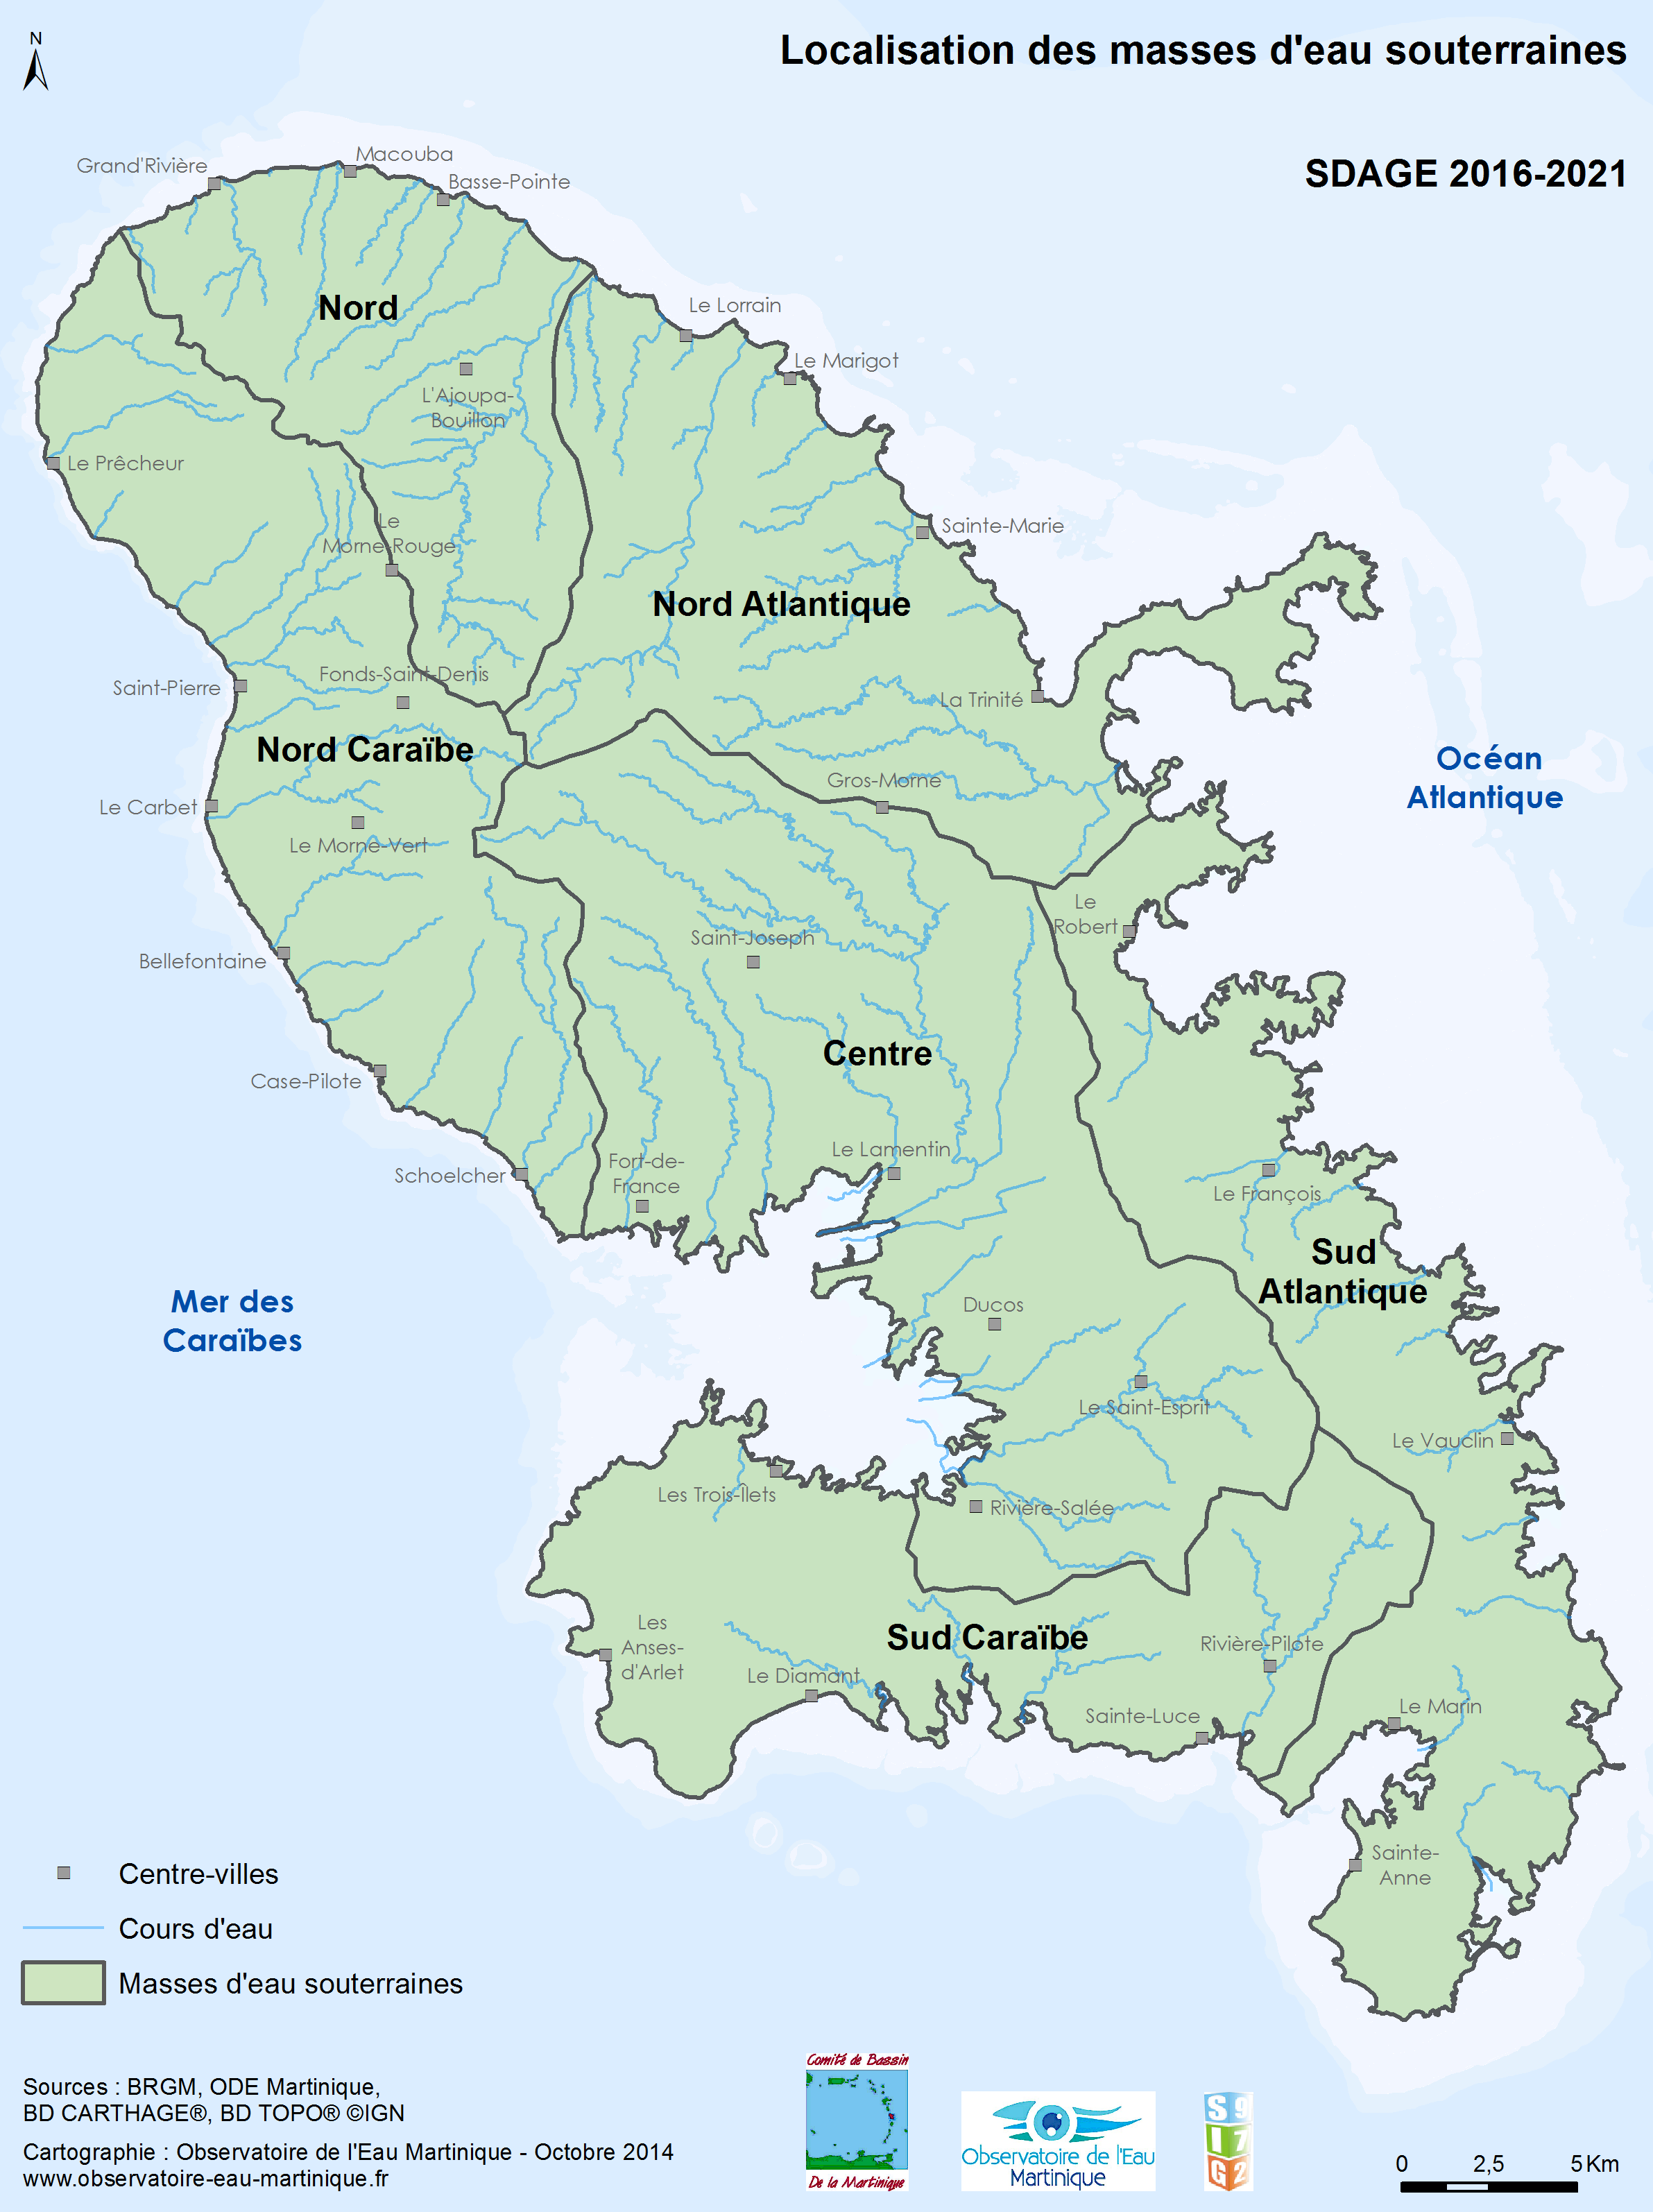 SDAGE 2016-2021 - Localisation des masses d'eau souterraines